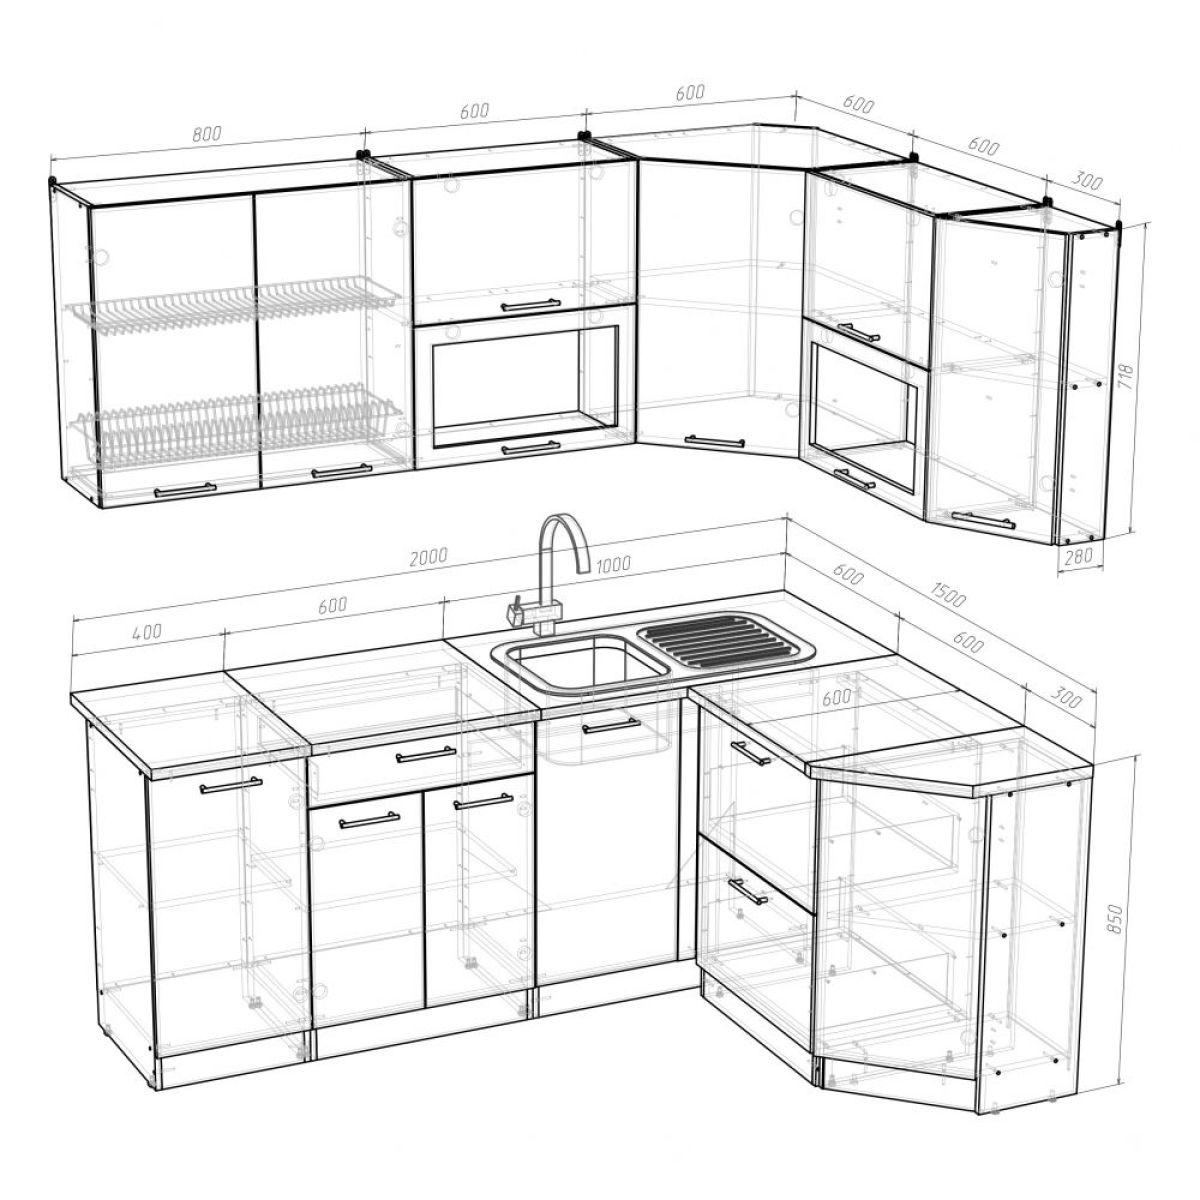 Стандартные размеры кухонных шкафов нижних и верхних чертежи и размеры .